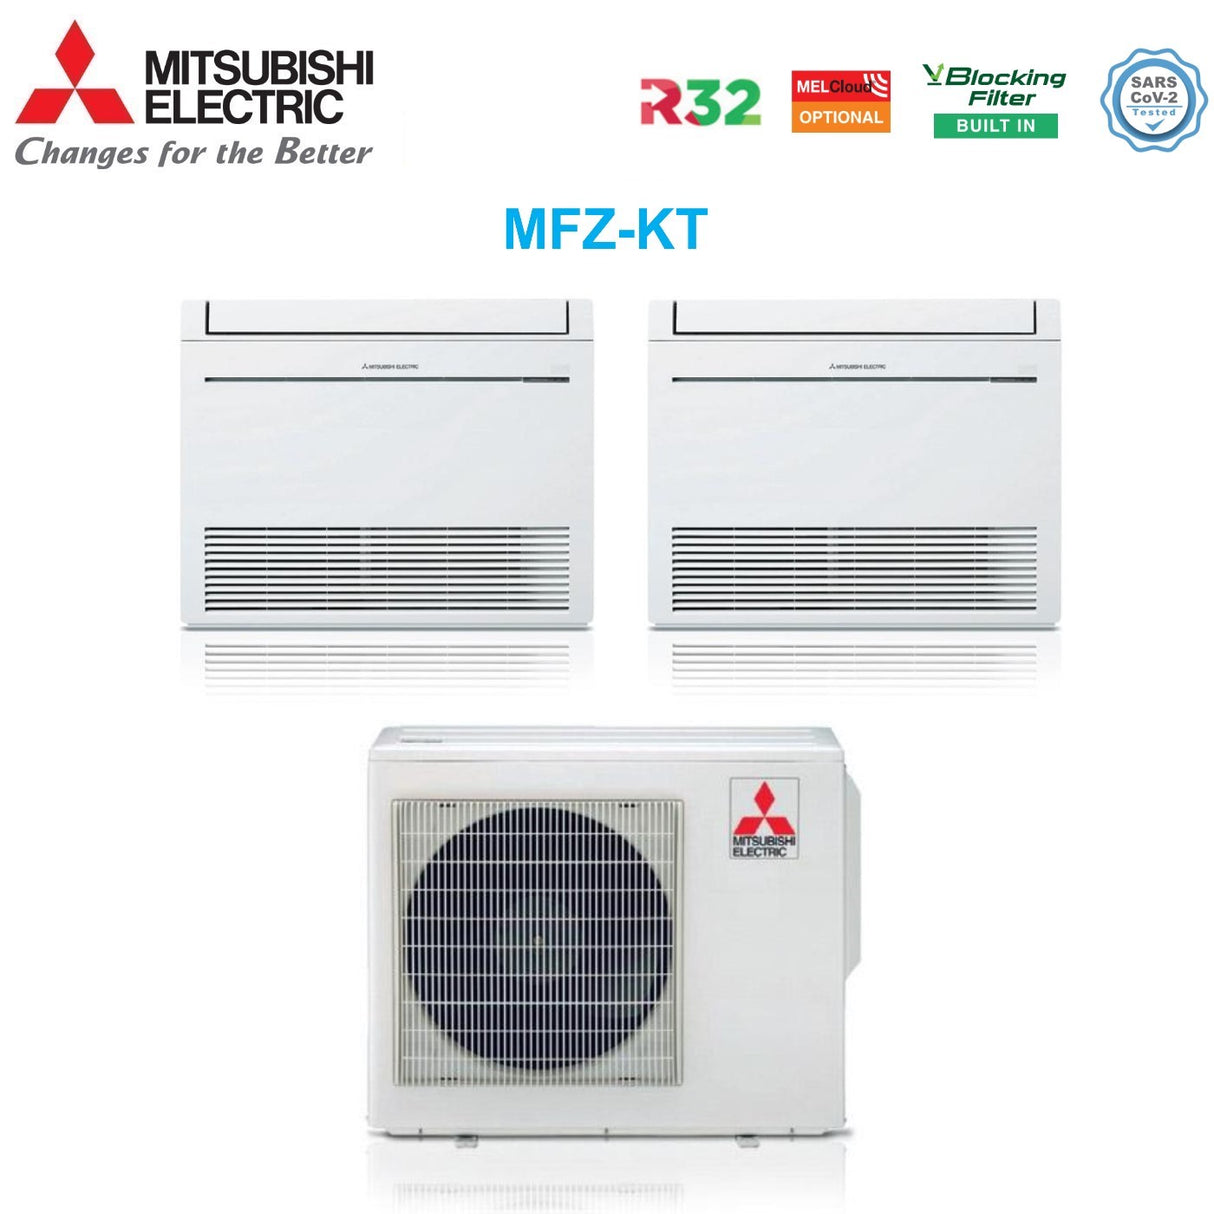 immagine-2-mitsubishi-electric-climatizzatore-condizionatore-mitsubishi-electric-pavimento-dual-split-inverter-serie-mfz-kt-1212-con-mxz-3f68vf-r-32-wi-fi-optional-con-telecomando-incluso-1200012000